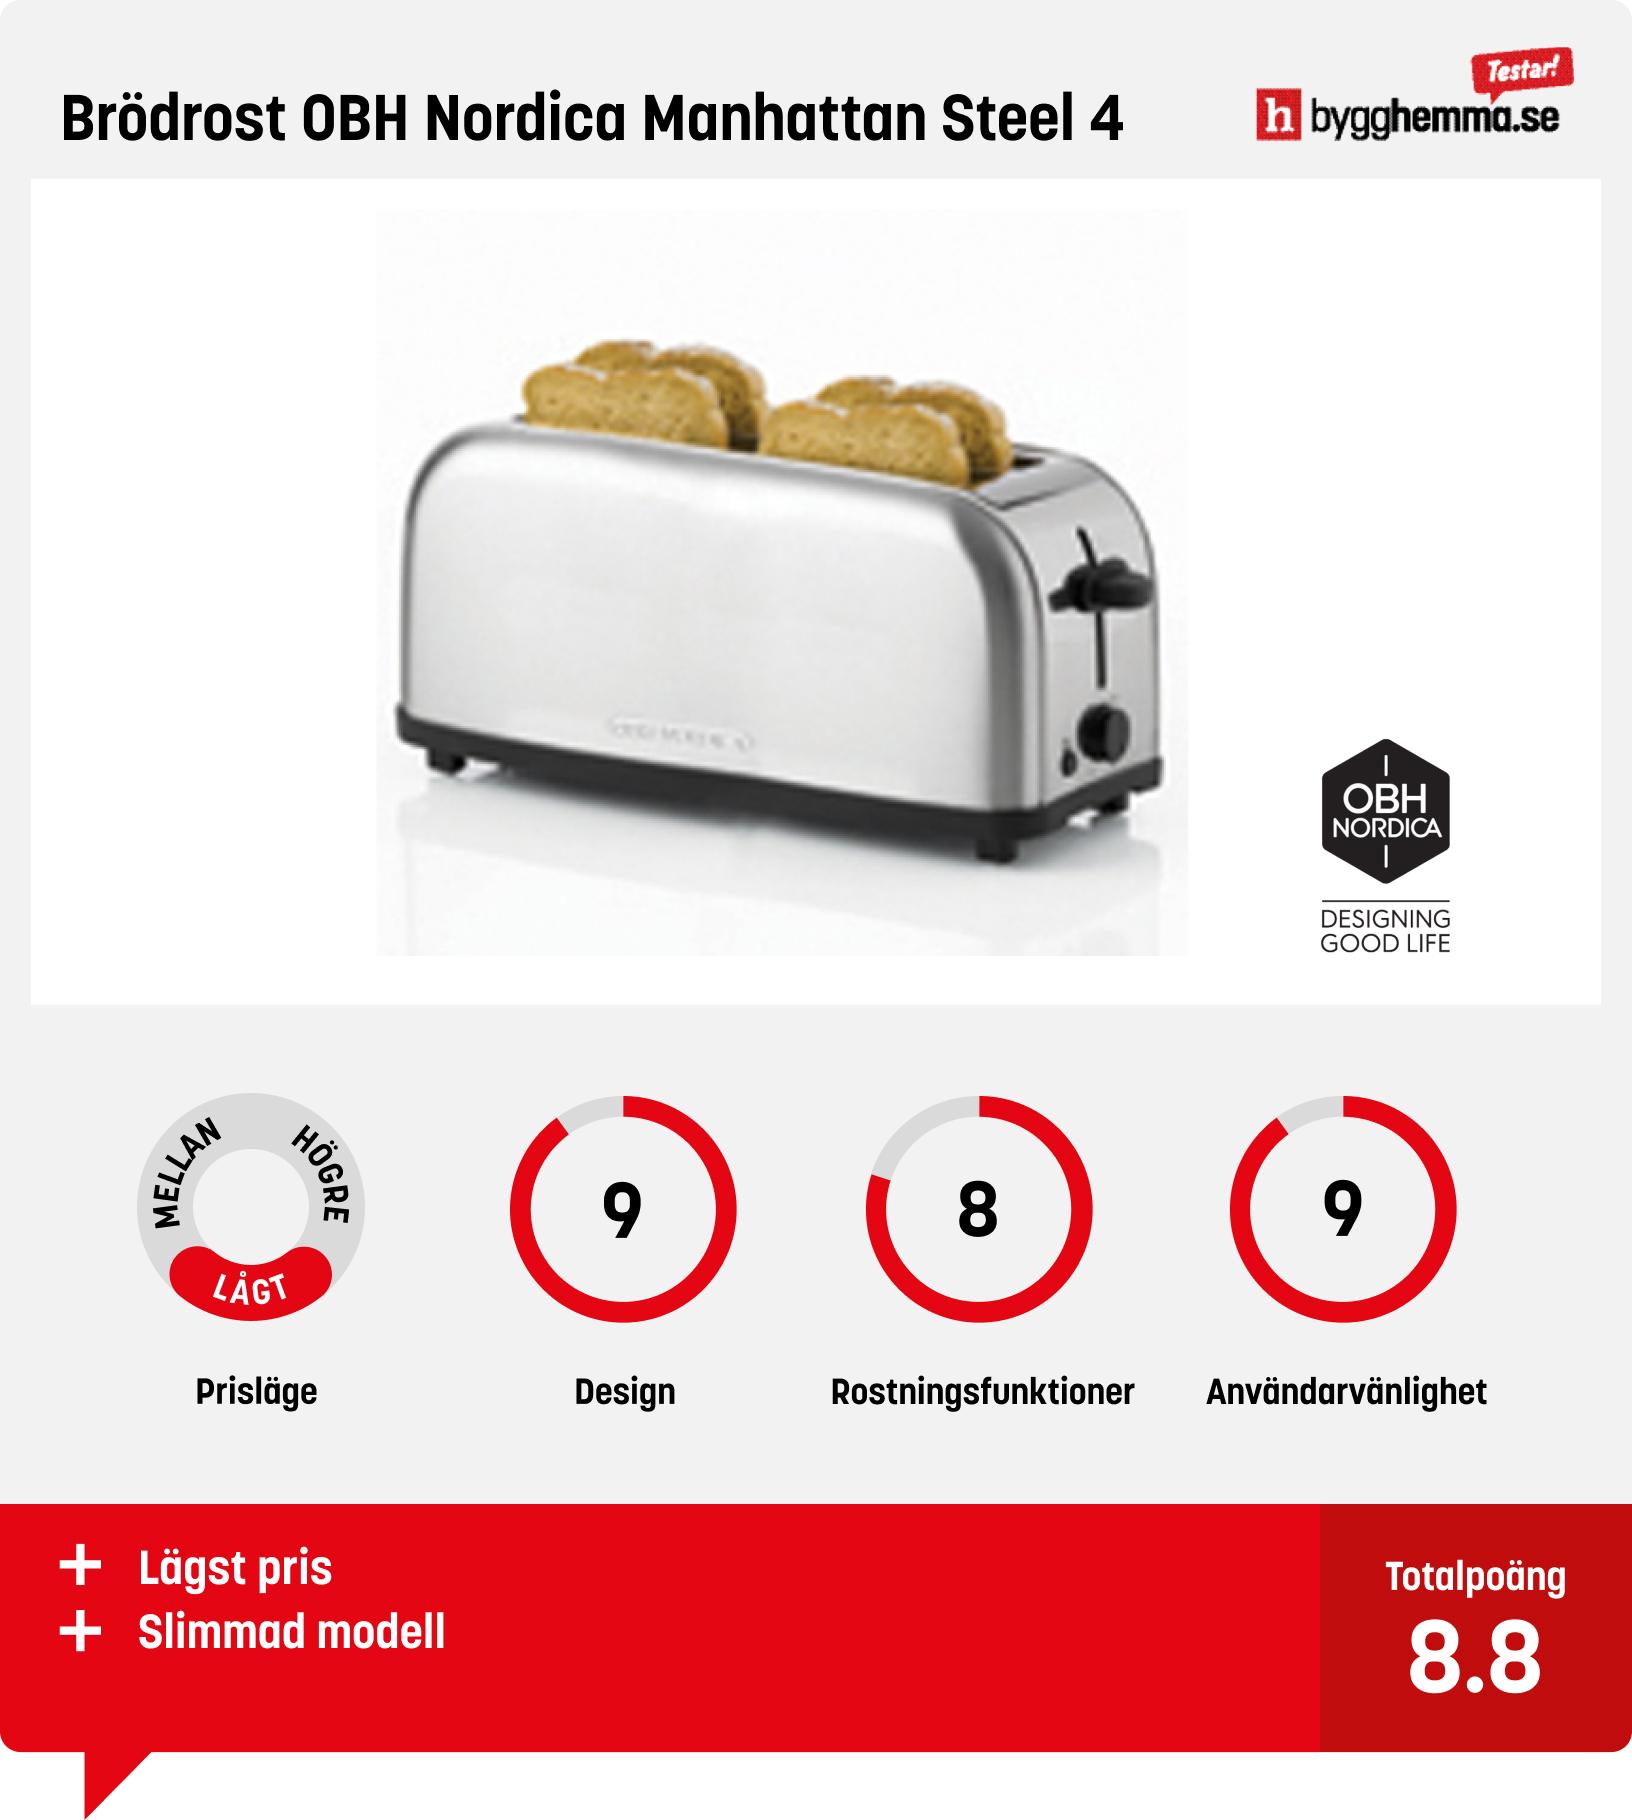 Brödrost 4 skivor test - Brödrost OBH Nordica Manhattan Steel 4